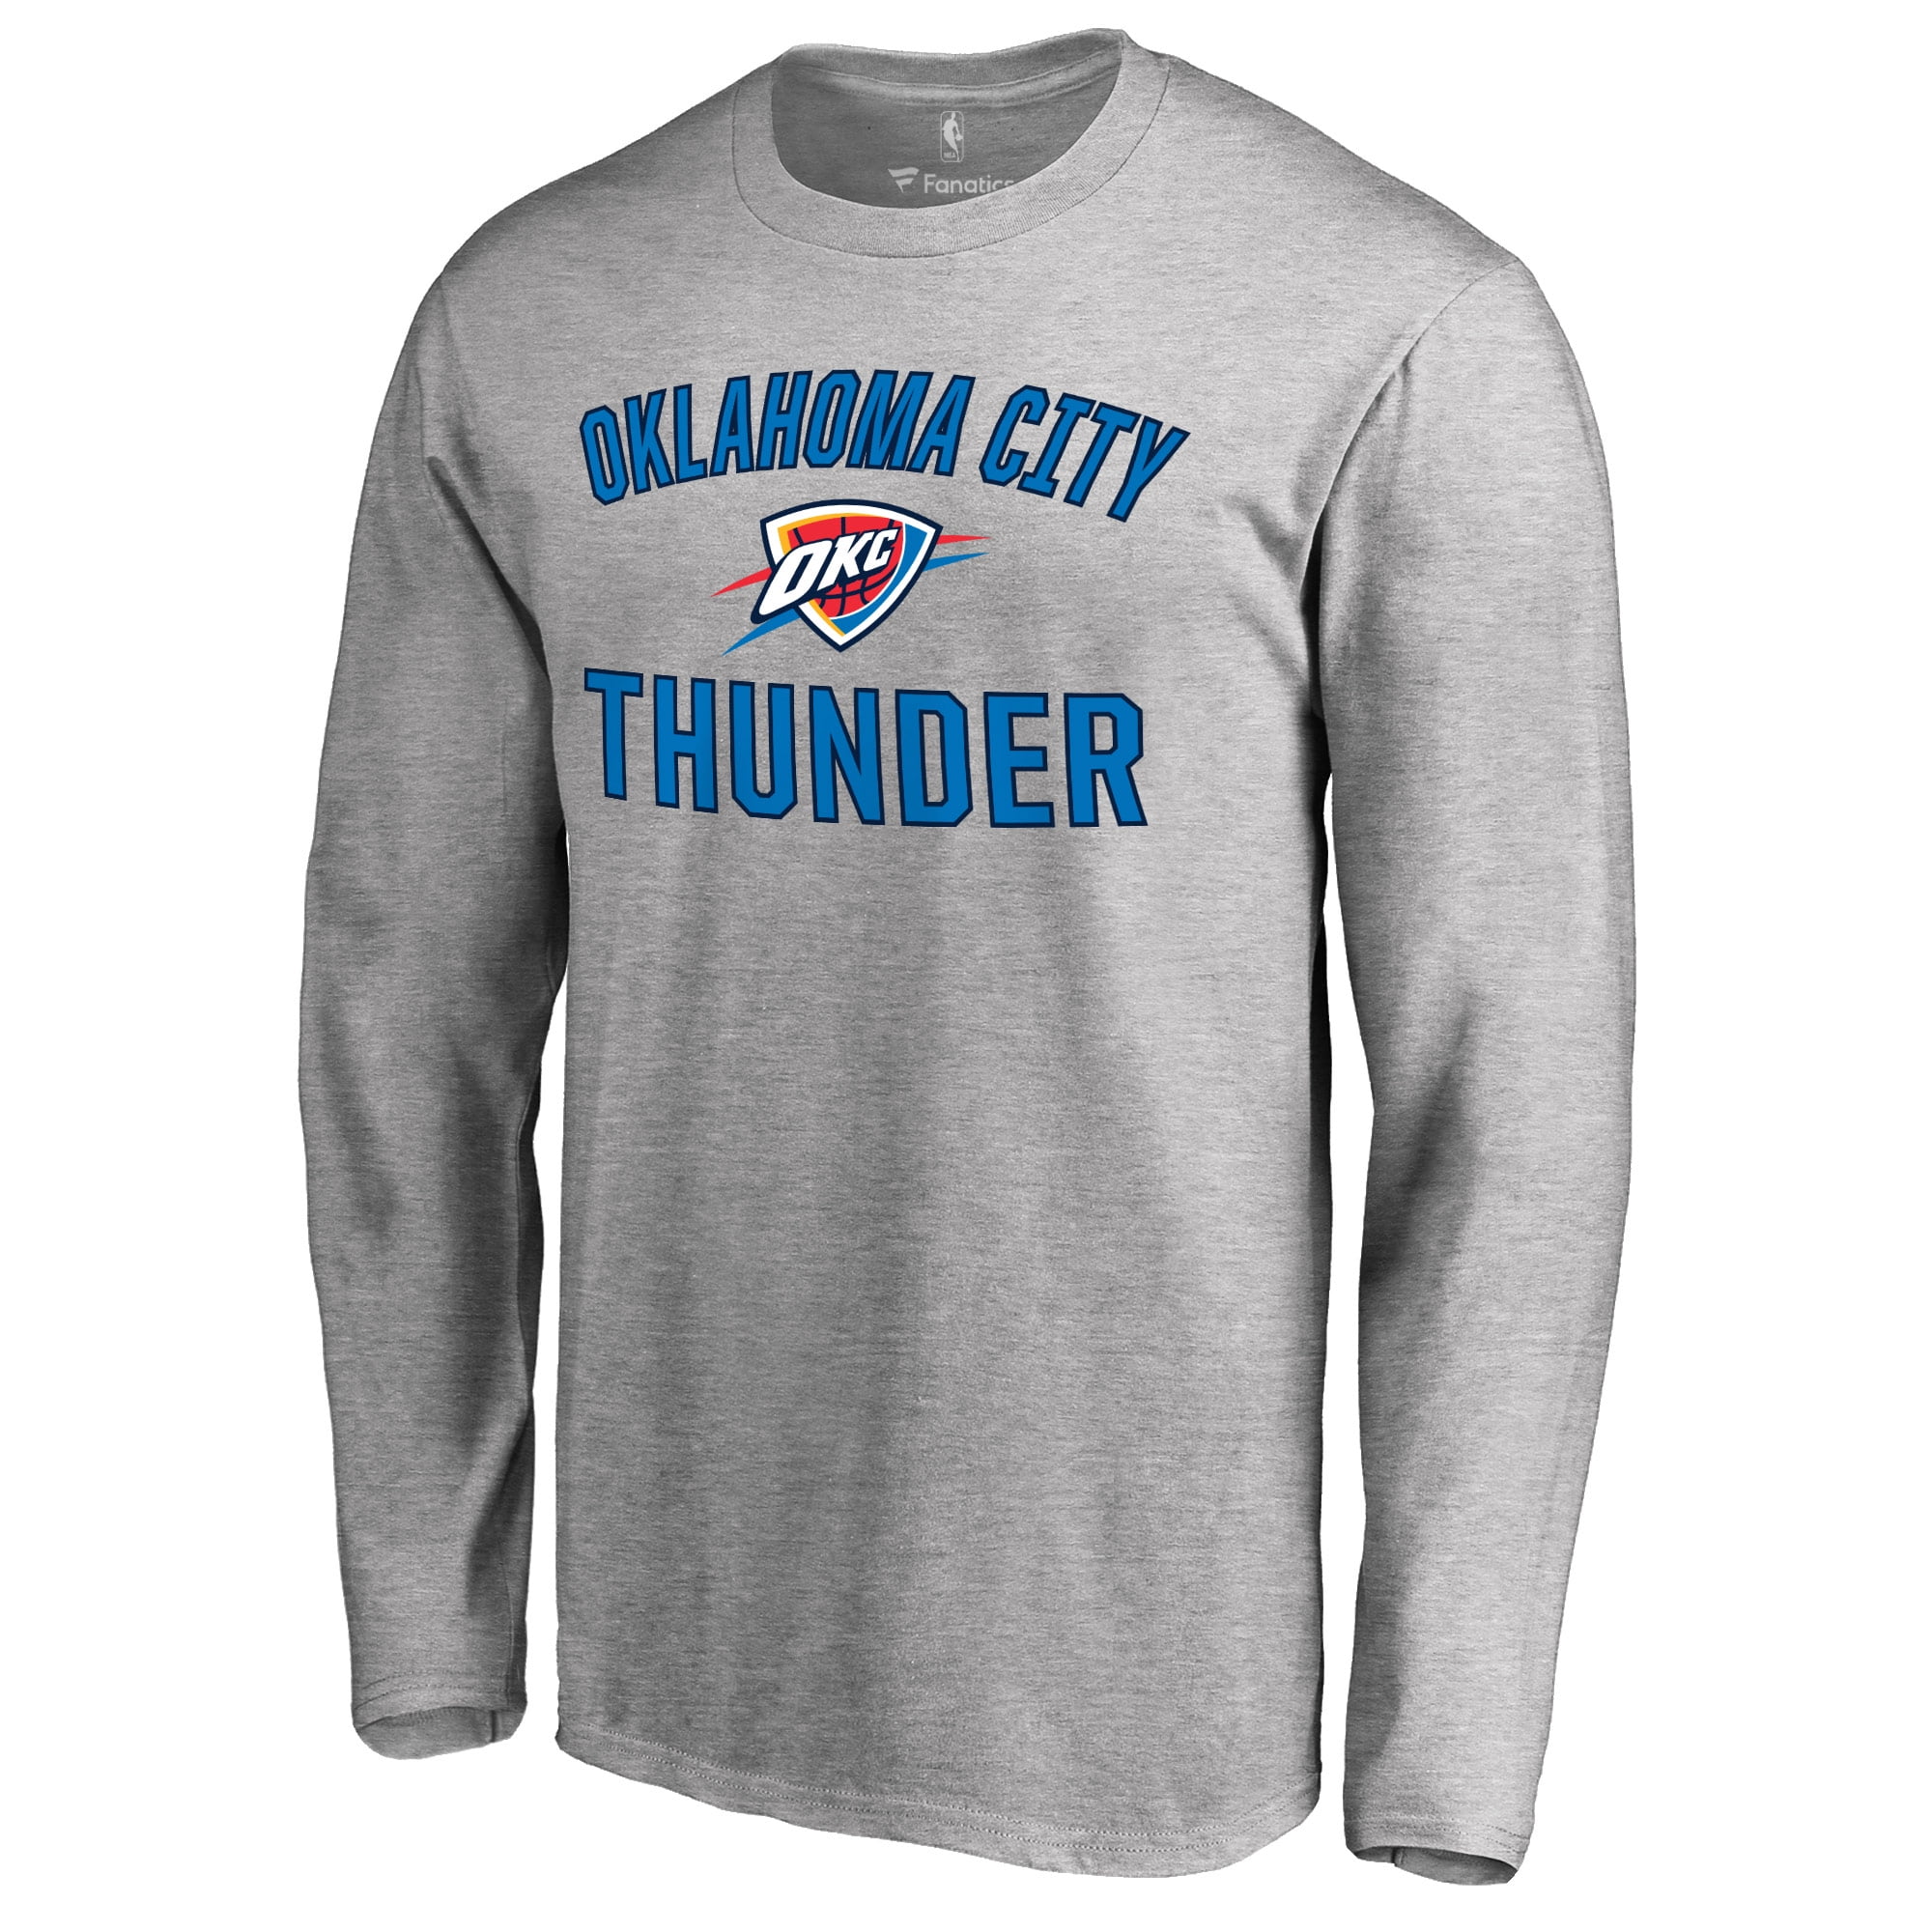 oklahoma city thunder long sleeve t shirt